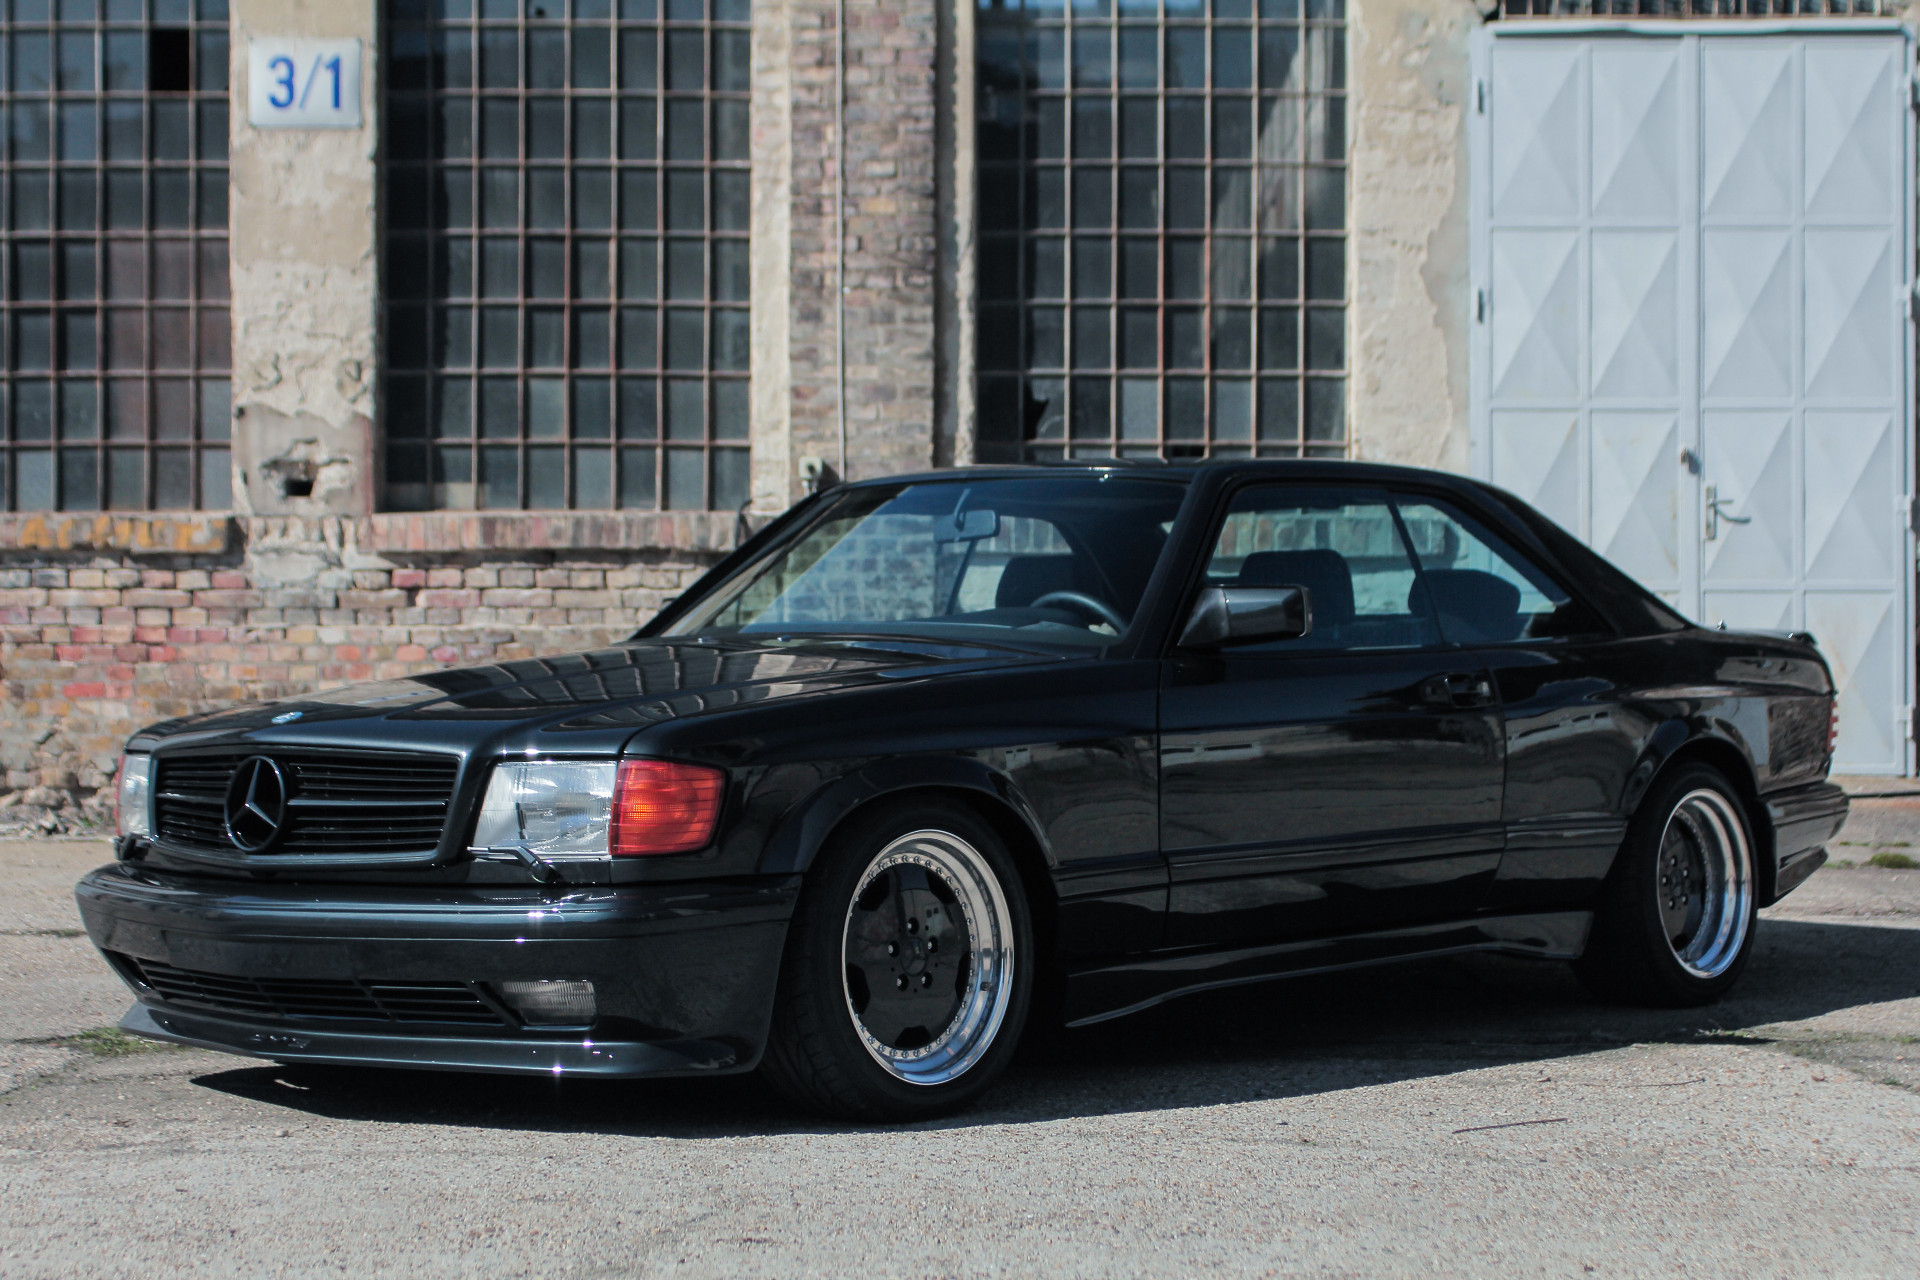 Rare Original Amg Built 19 Mercedes 560 Sec Amg Wide Body For Sale By Petrolhead Classics